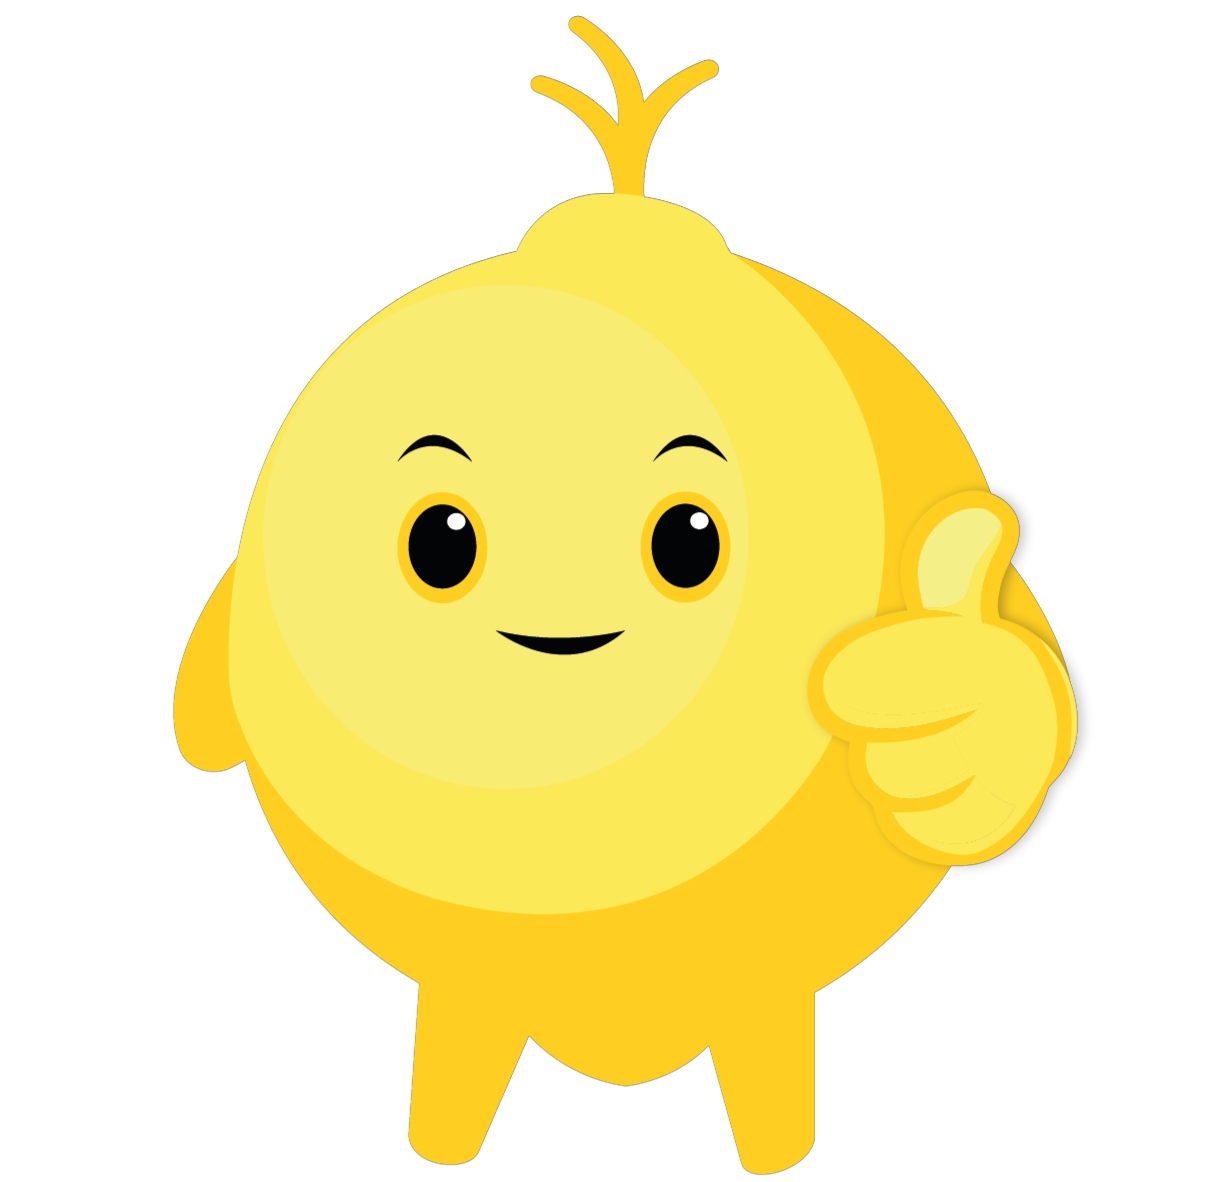 Lemonaide mascot